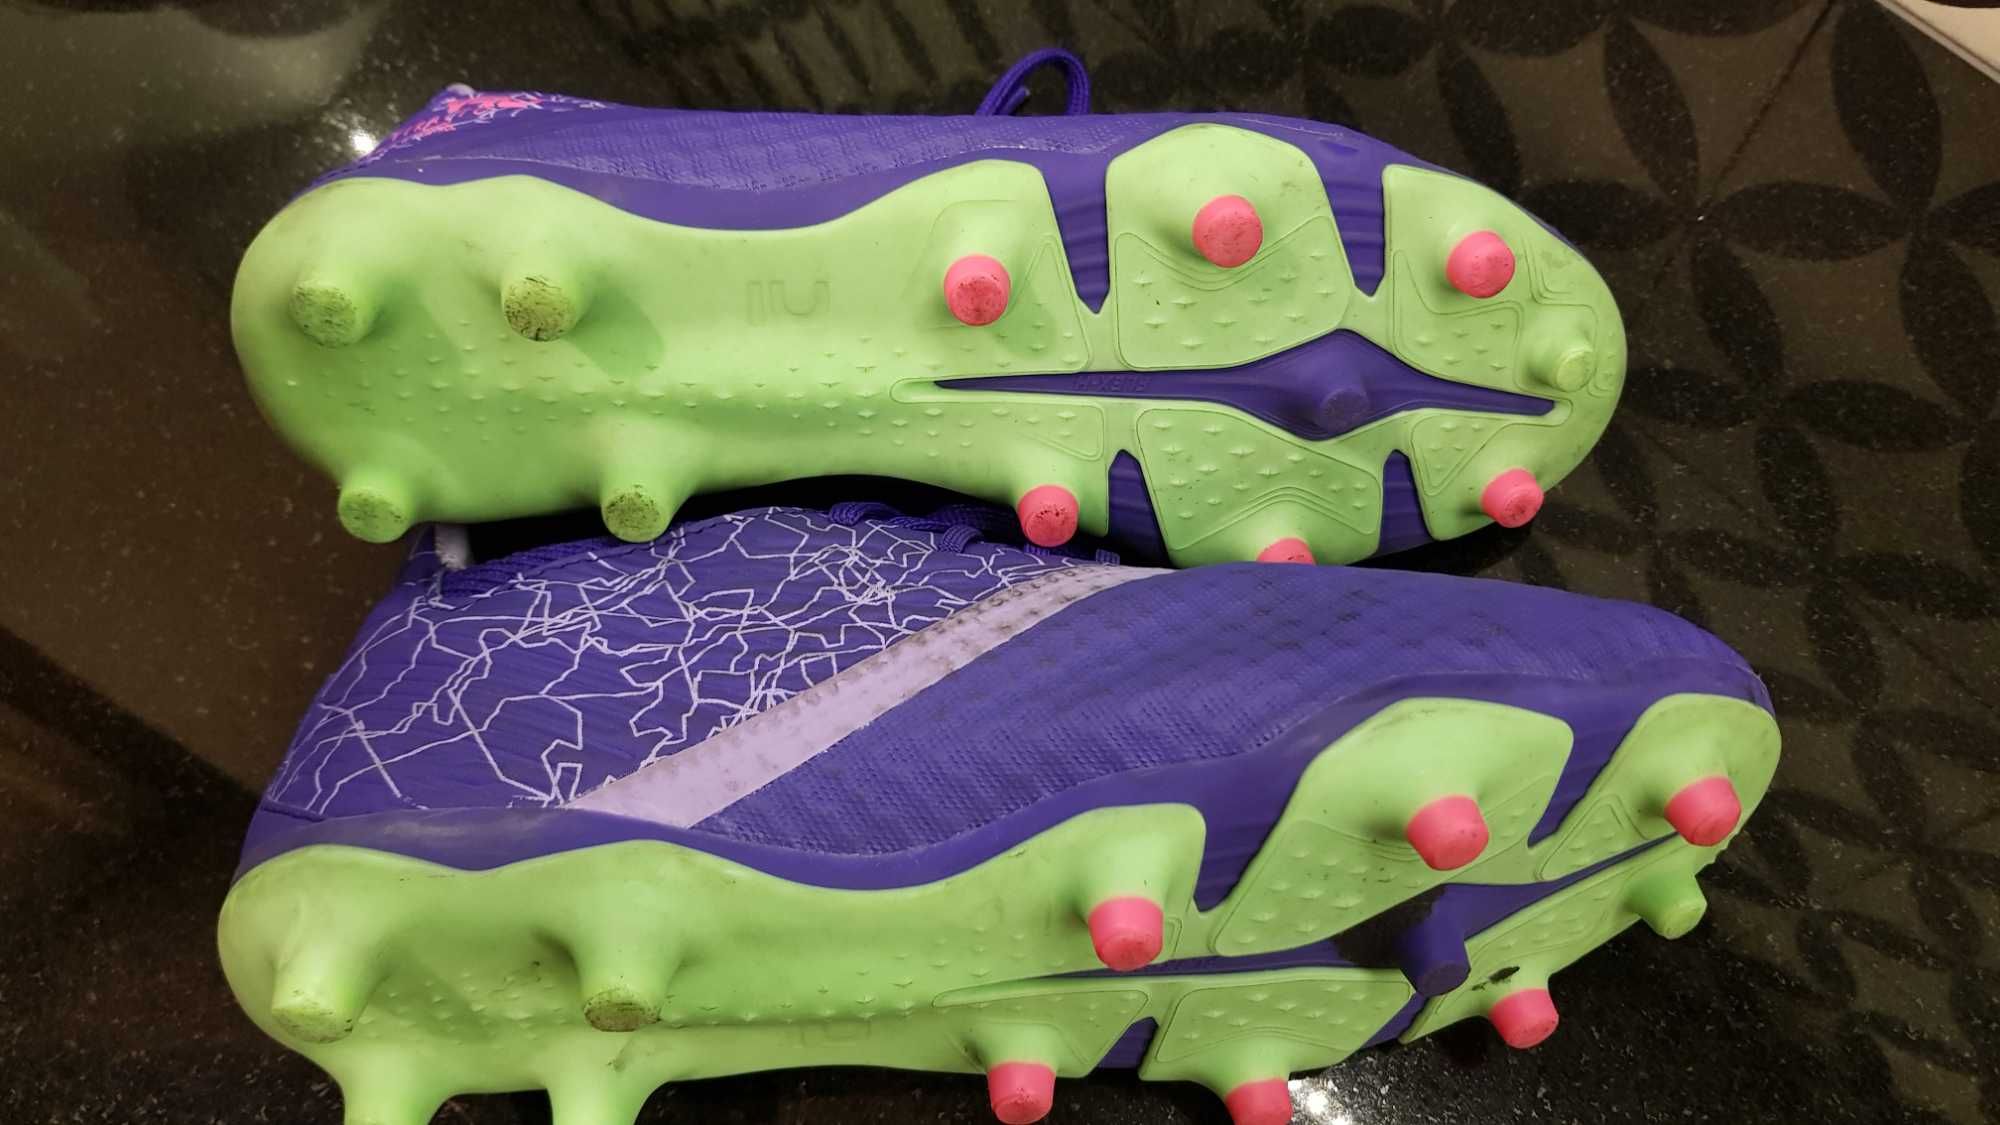 Buty do piłki nożnej dla dzieci Kipsta Viralto III FG Alpha sznurowane